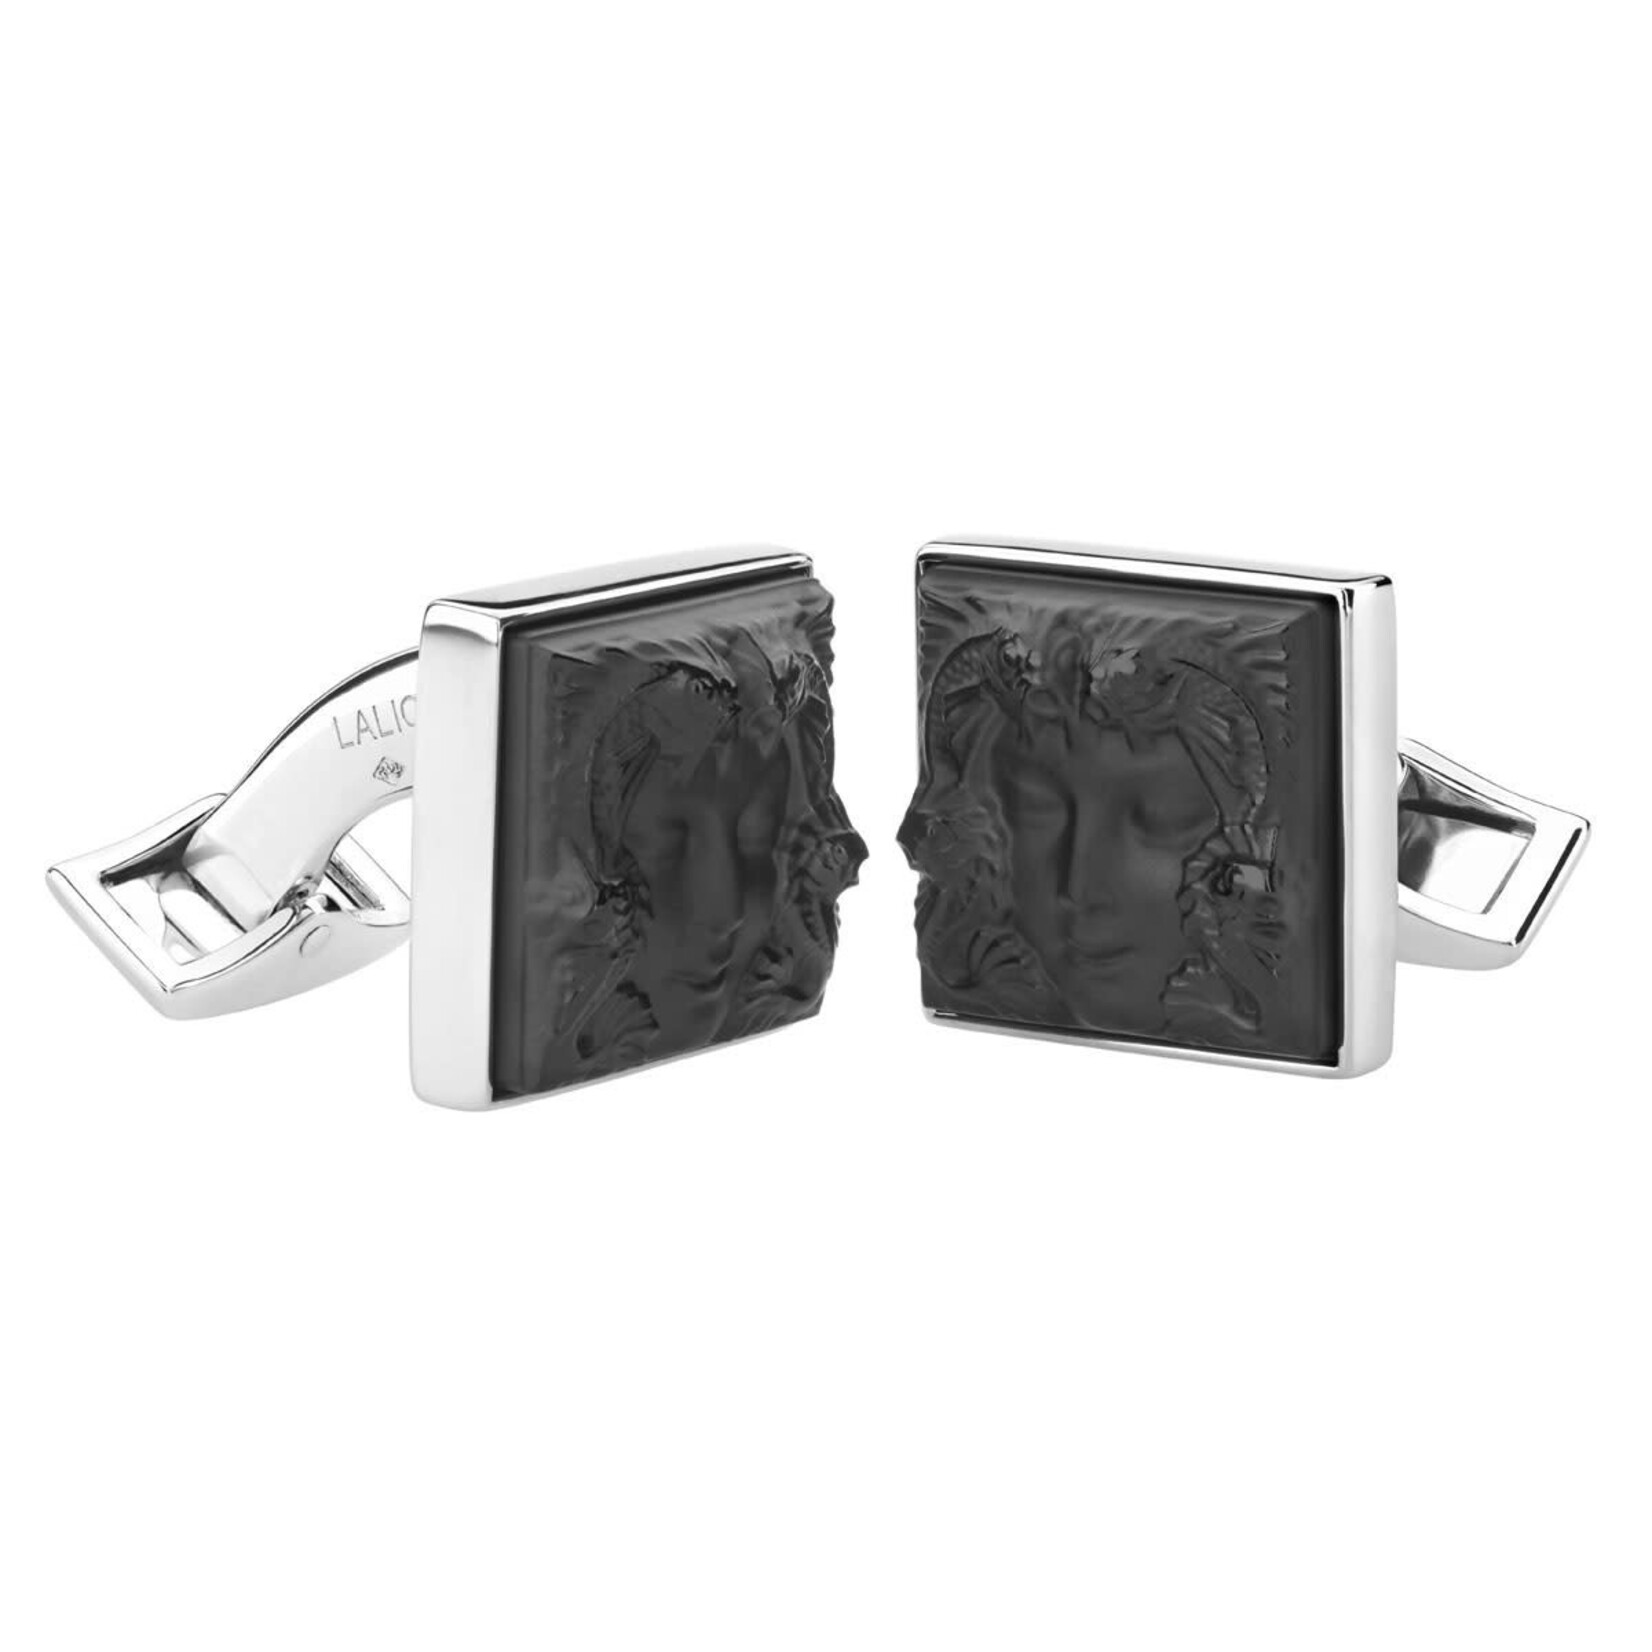 Lalique Cufflinks_Black Arethuse_LALIQUE